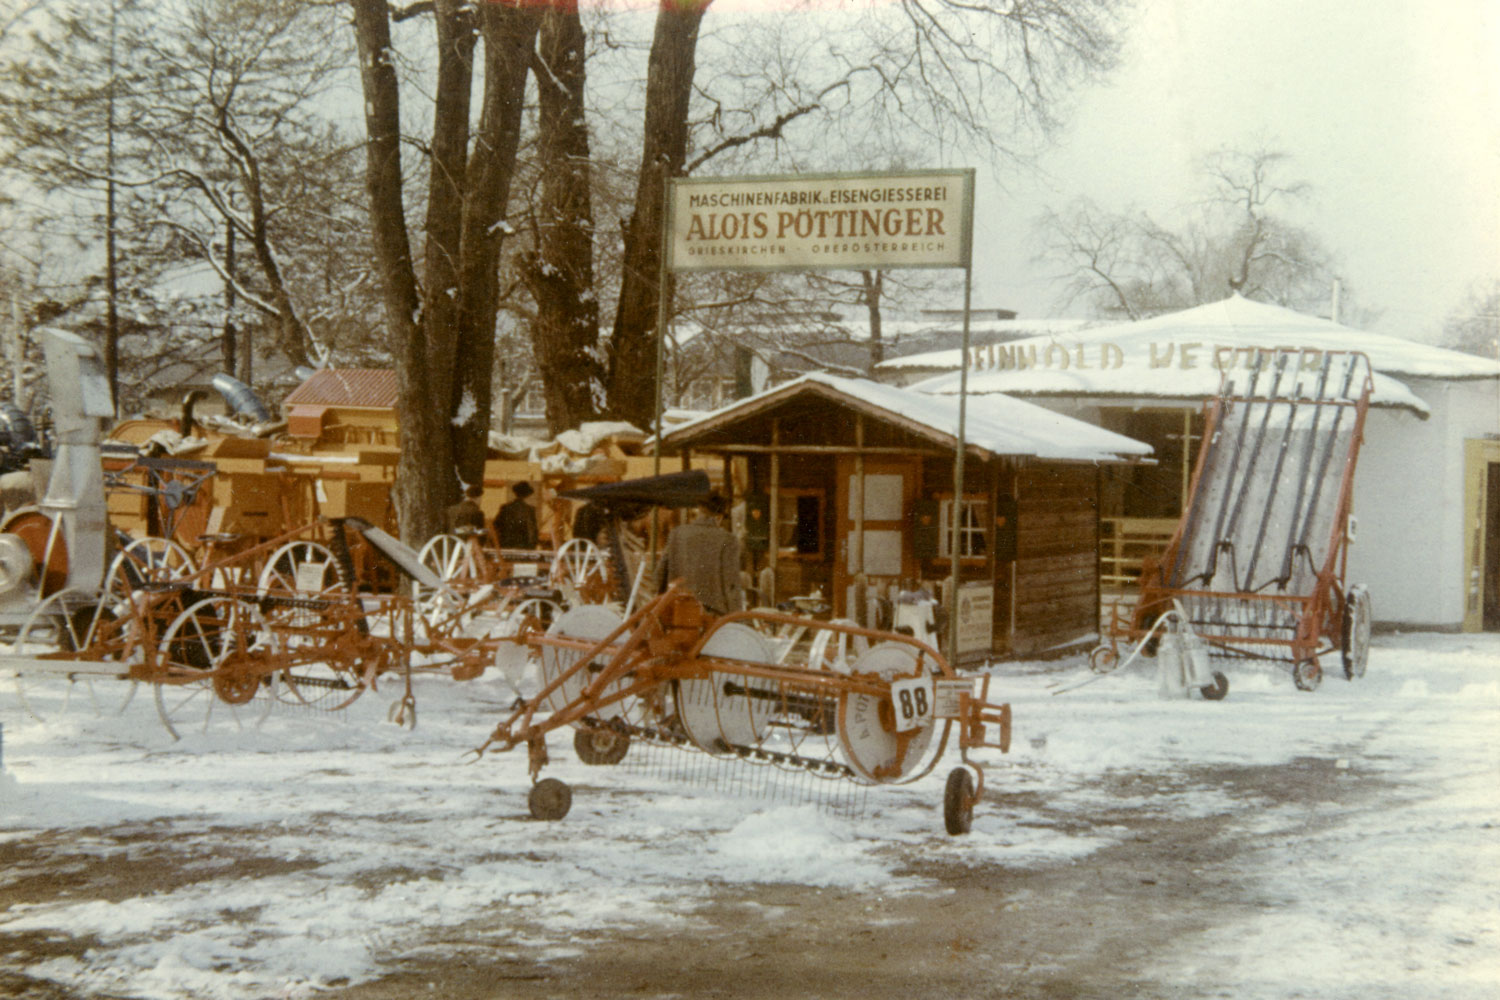 La caravane des salons PÖTTINGER est également en tournée en hiver.